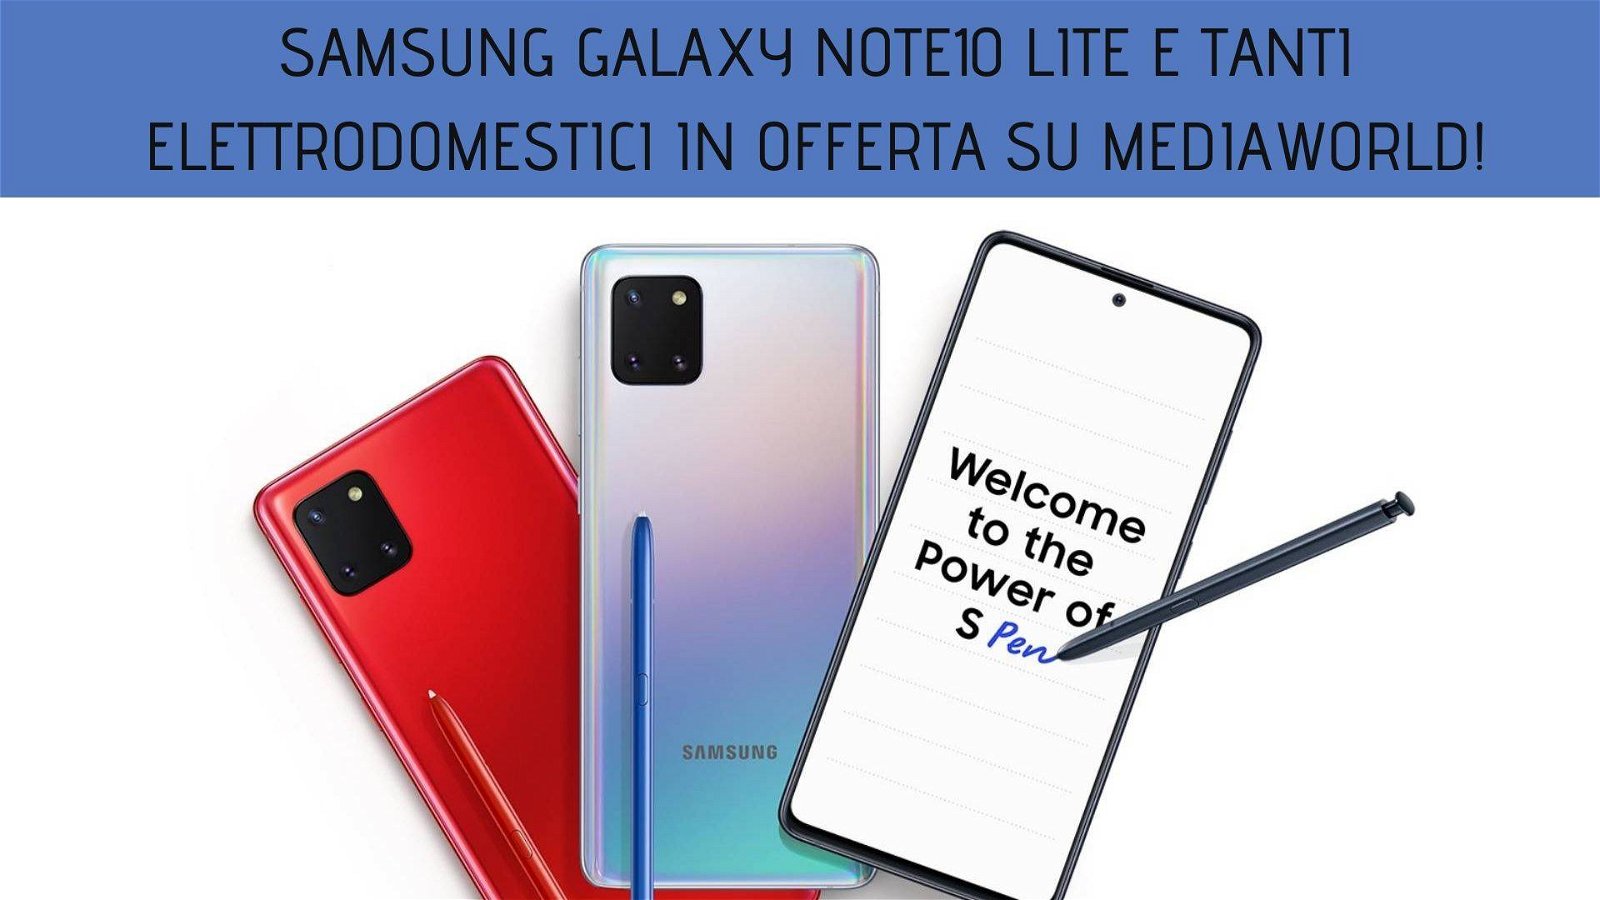 Immagine di Samsung Galaxy Note10 Lite e tanti elettrodomestici nelle offerte dei Solo per Oggi Mediaworld